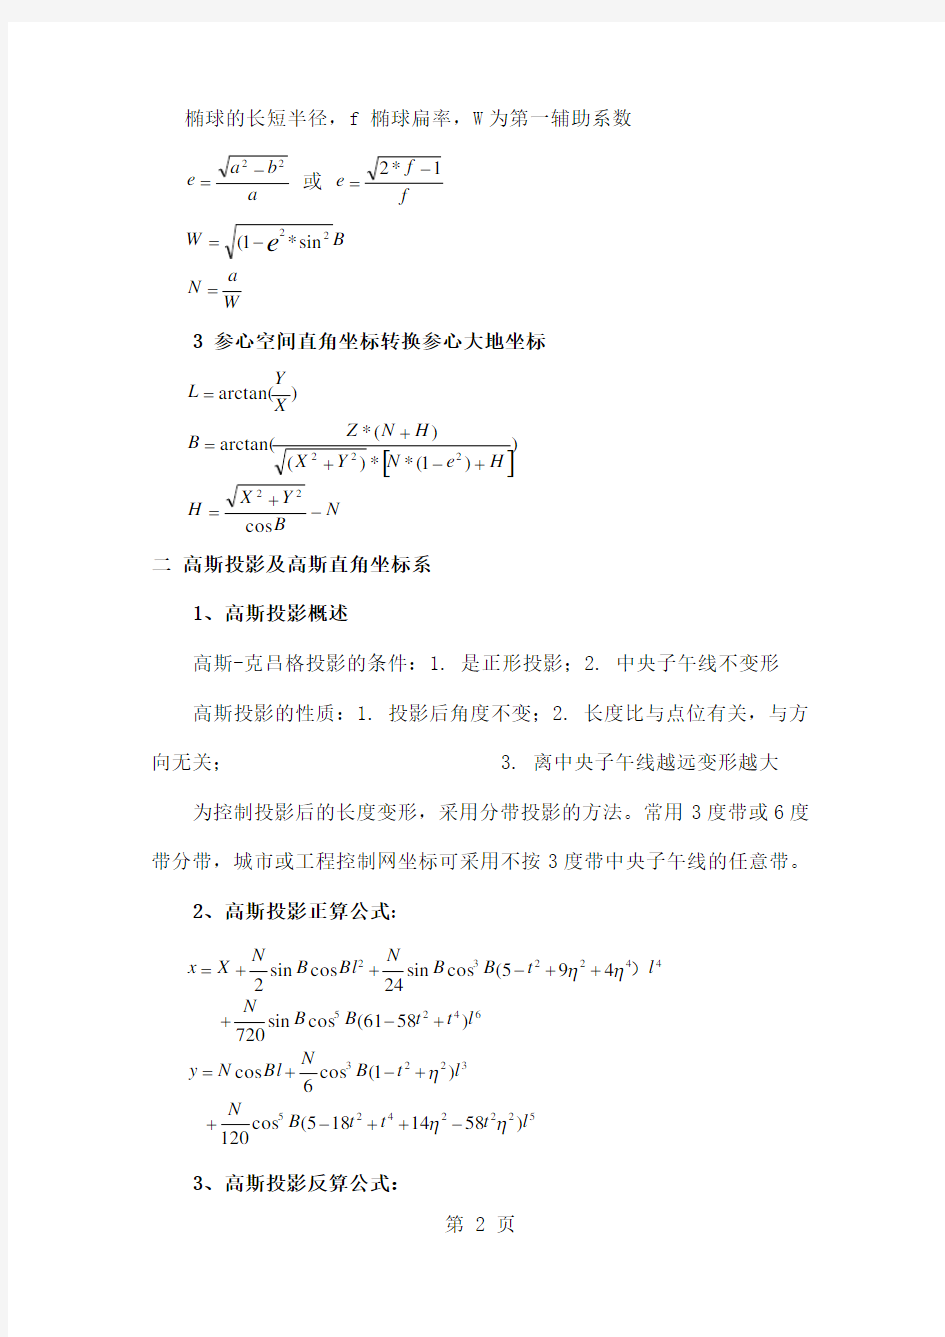 坐标转换之计算公式6页